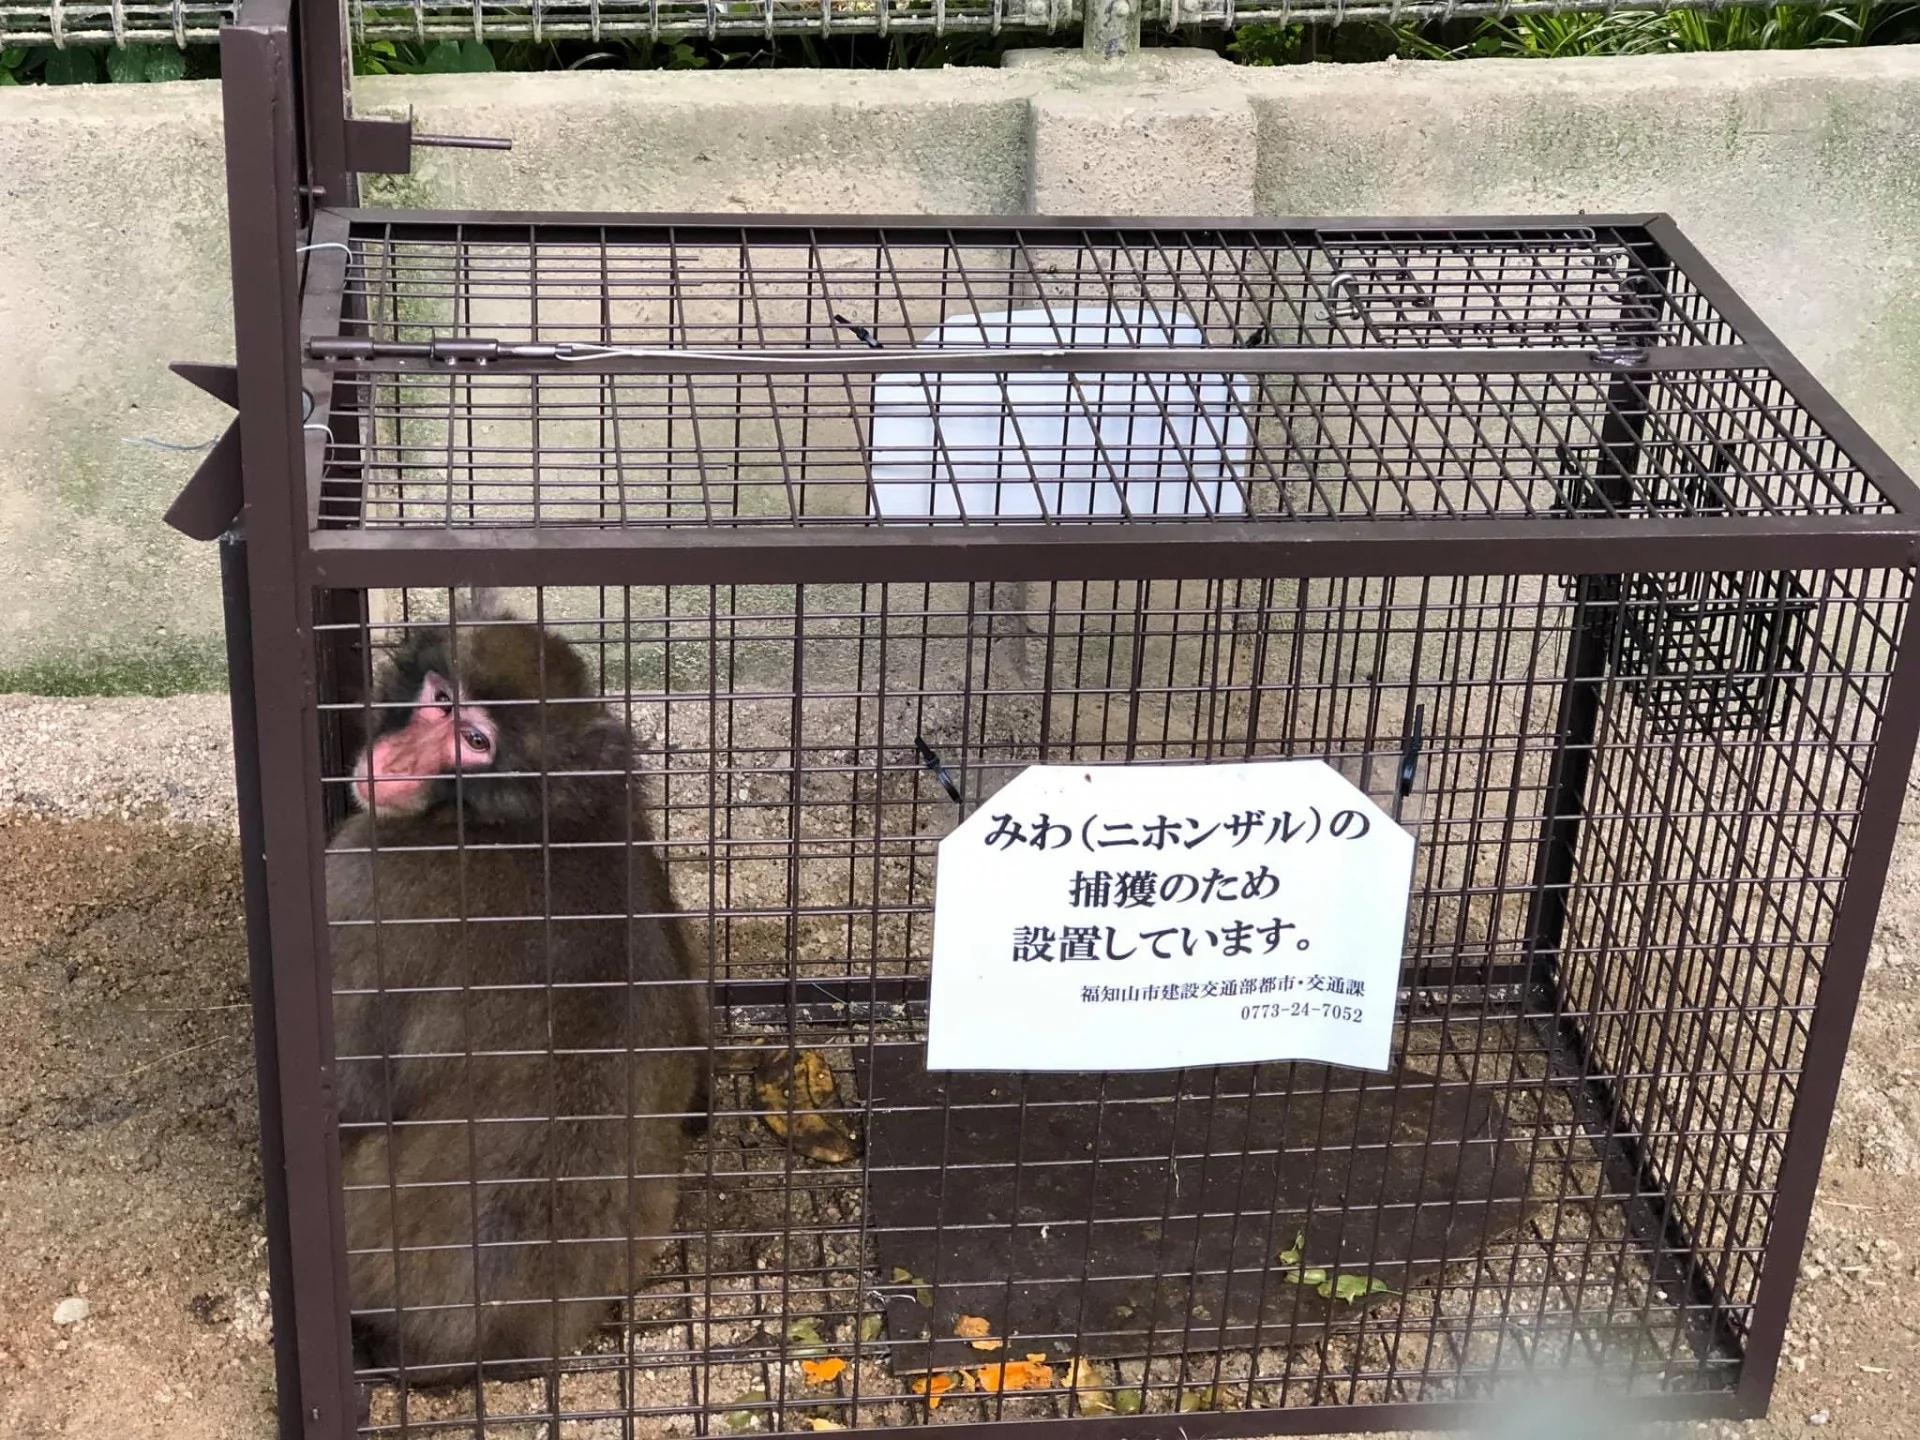 京都野豬騎士獼猴不見10天 終於尋回後表情像在反省超無辜